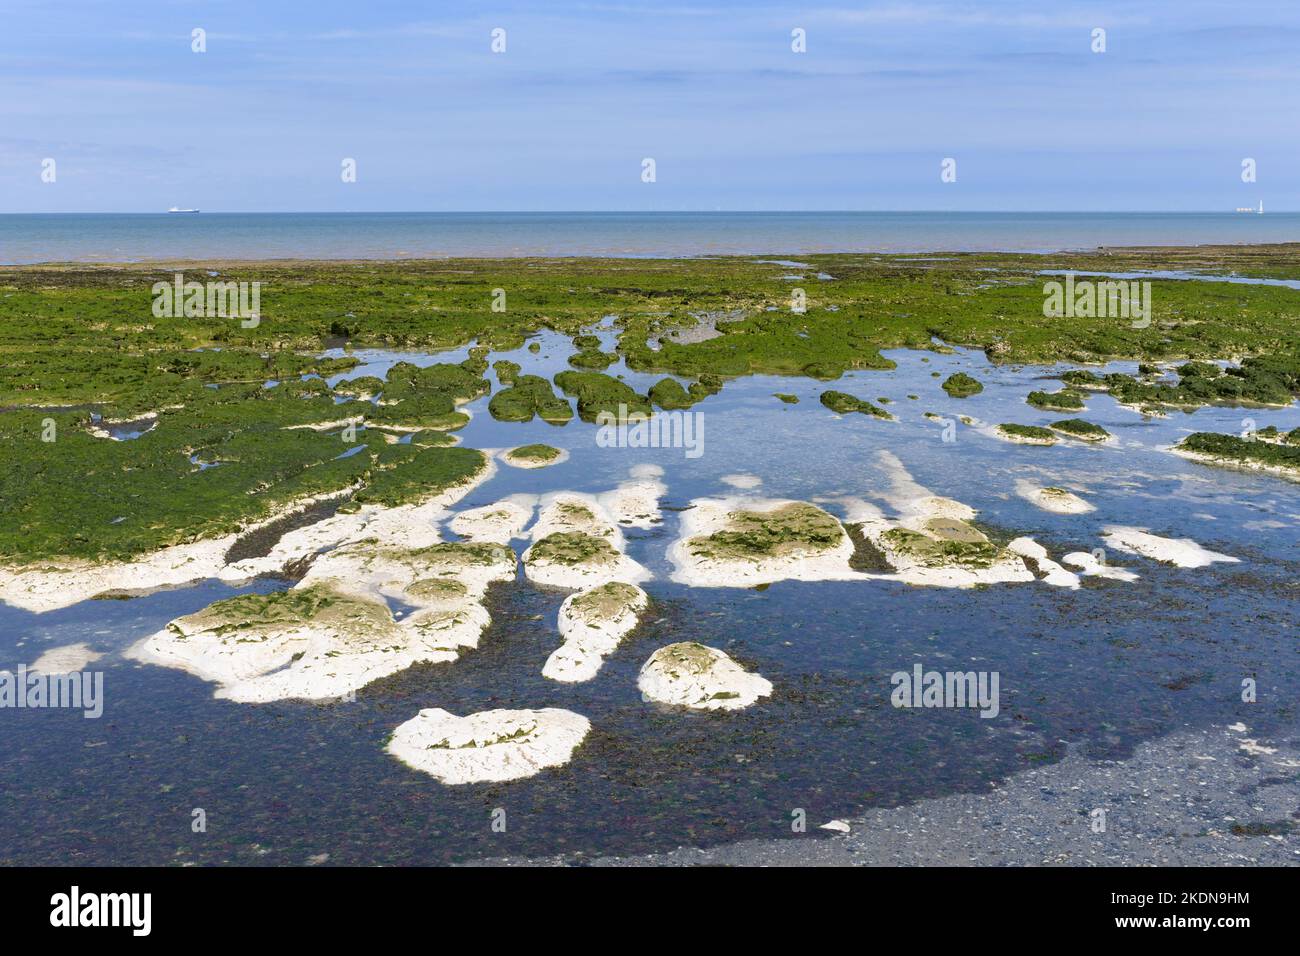 Plate-forme de craie coupée en vagues exposée à marée basse partiellement couverte d'algues - Birchington on Sea, Isle of Thanet, Kent, Angleterre, Royaume-Uni Banque D'Images